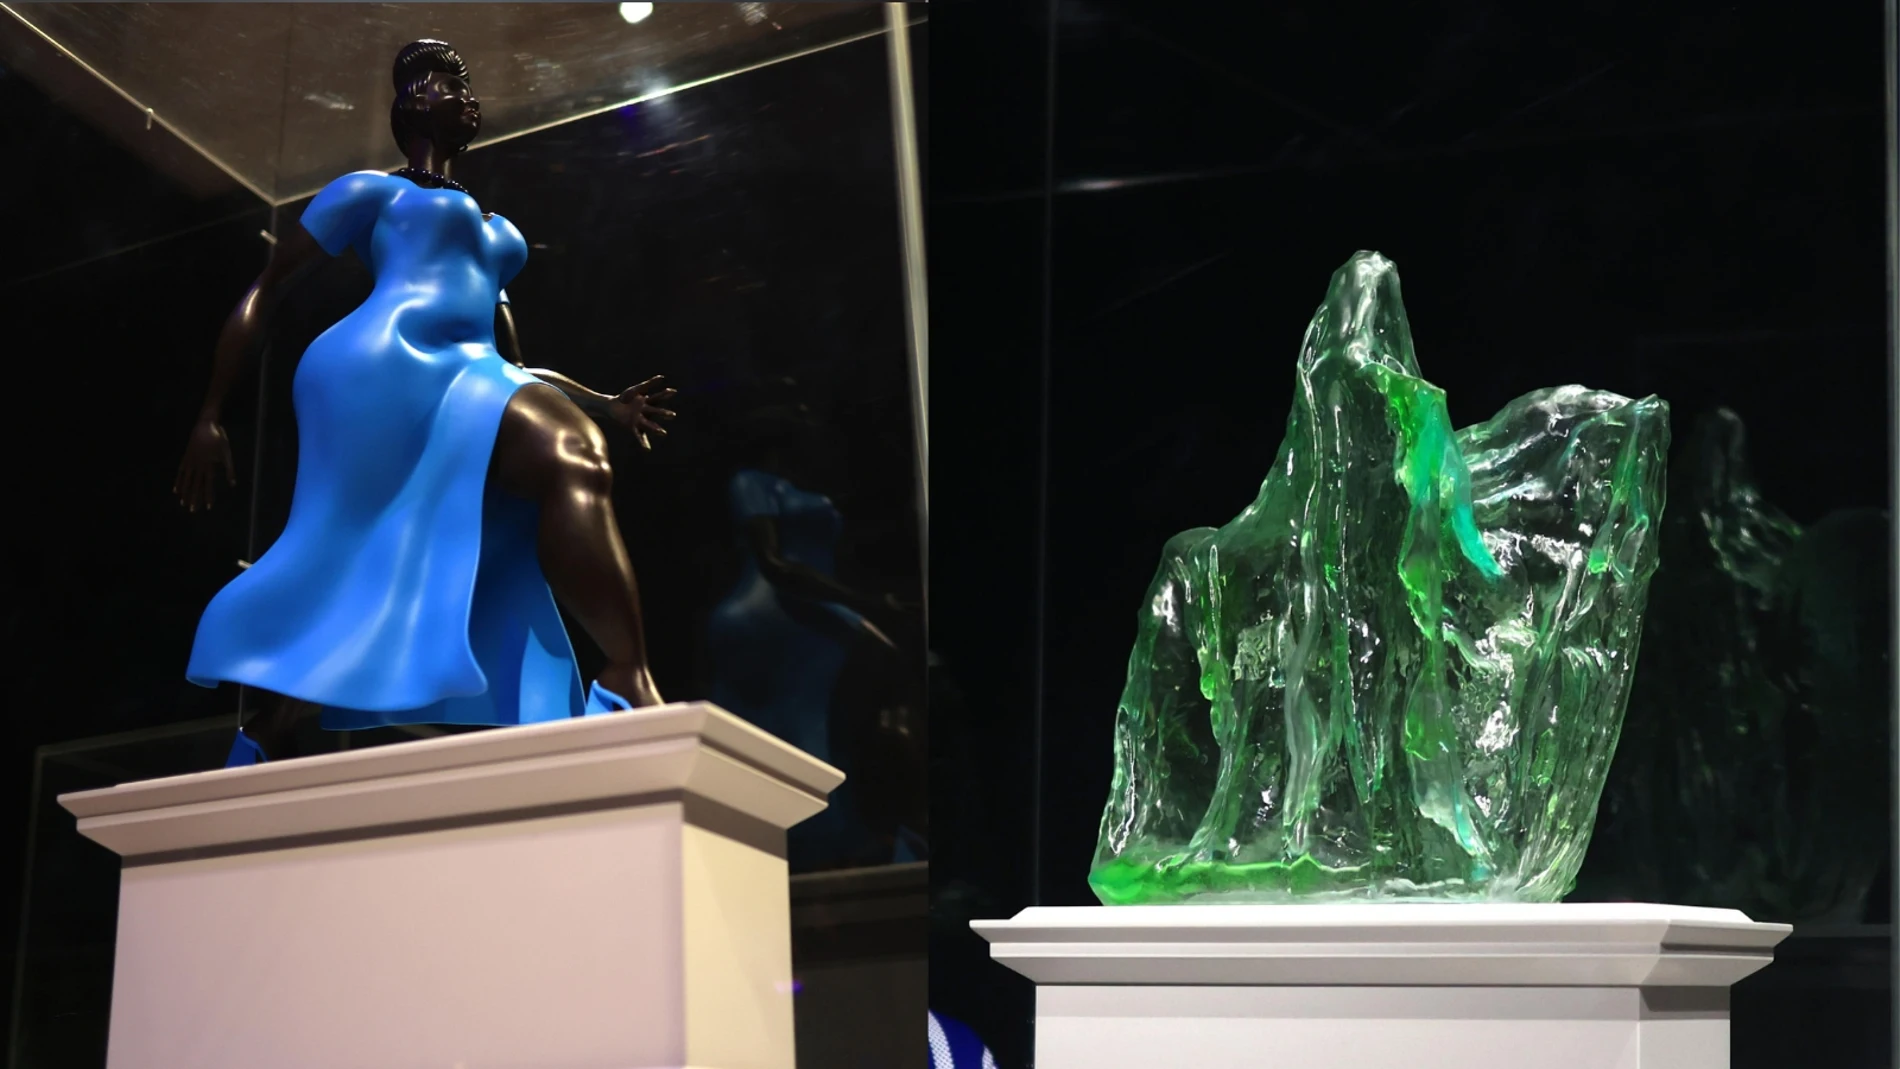 Revelan las nuevas esculturas para el cuarto pedestal de la Plaza de Trafalgar 